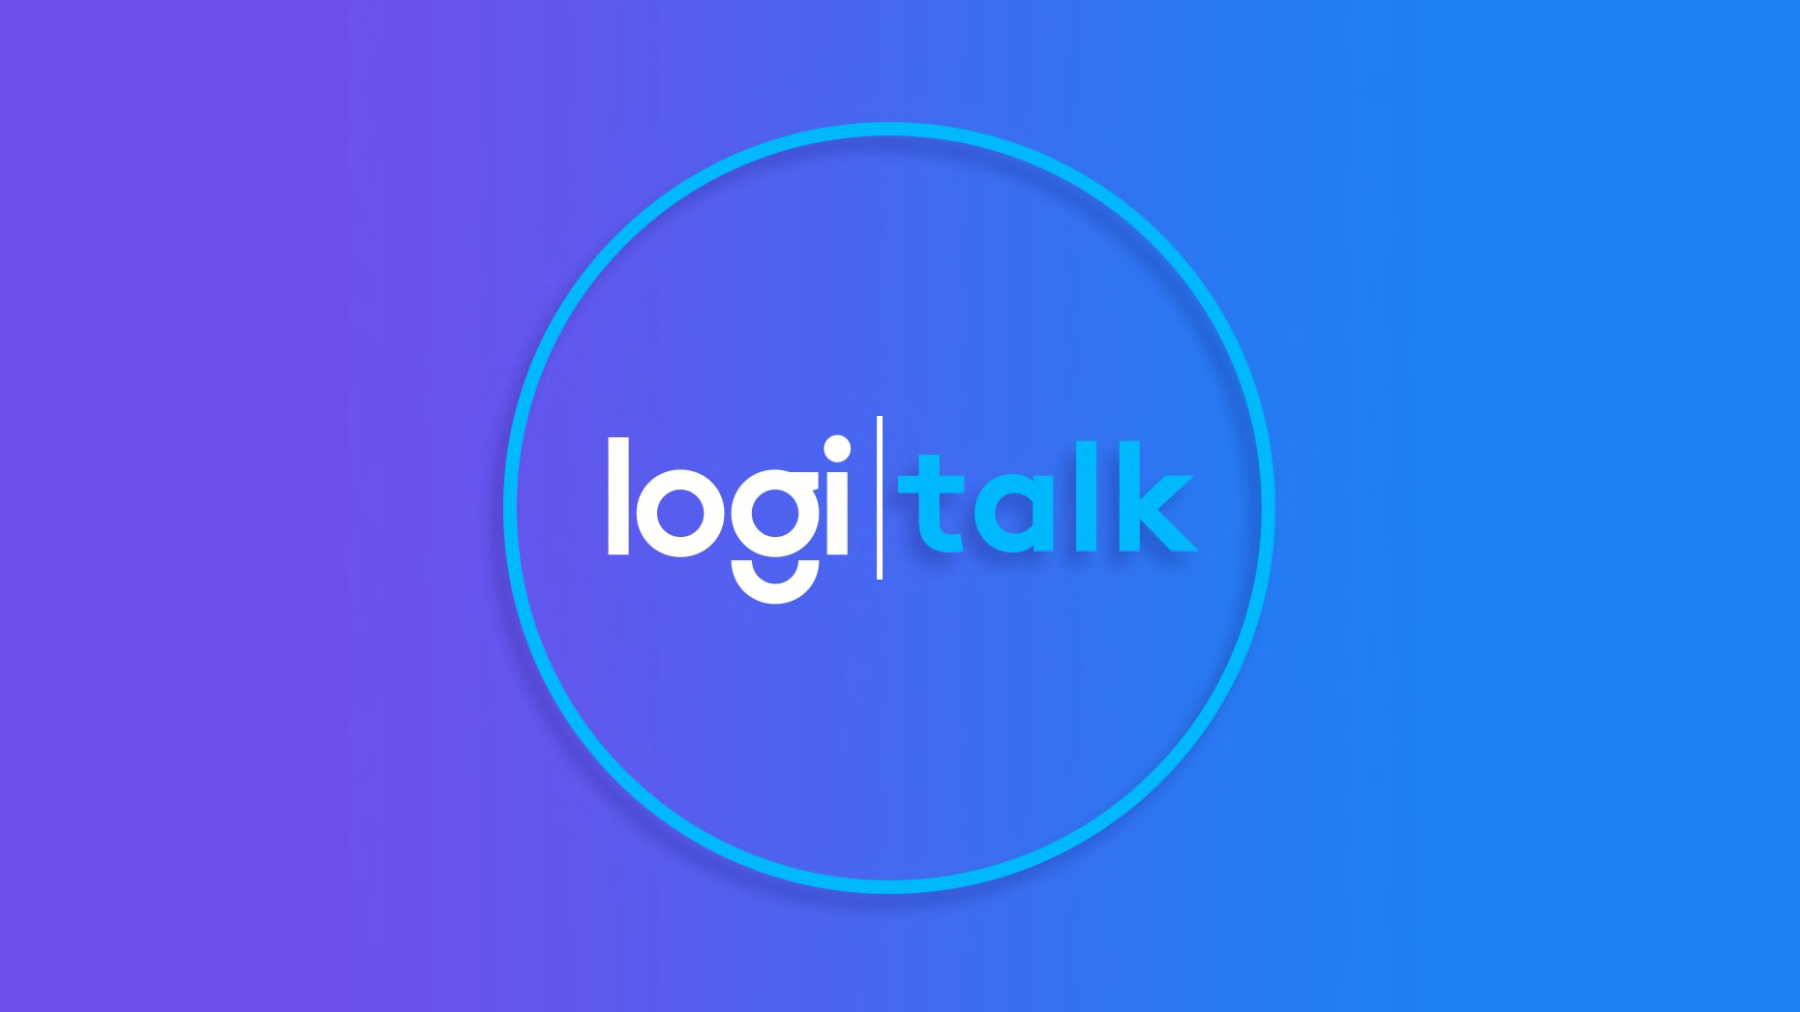 Logi talk 徽标